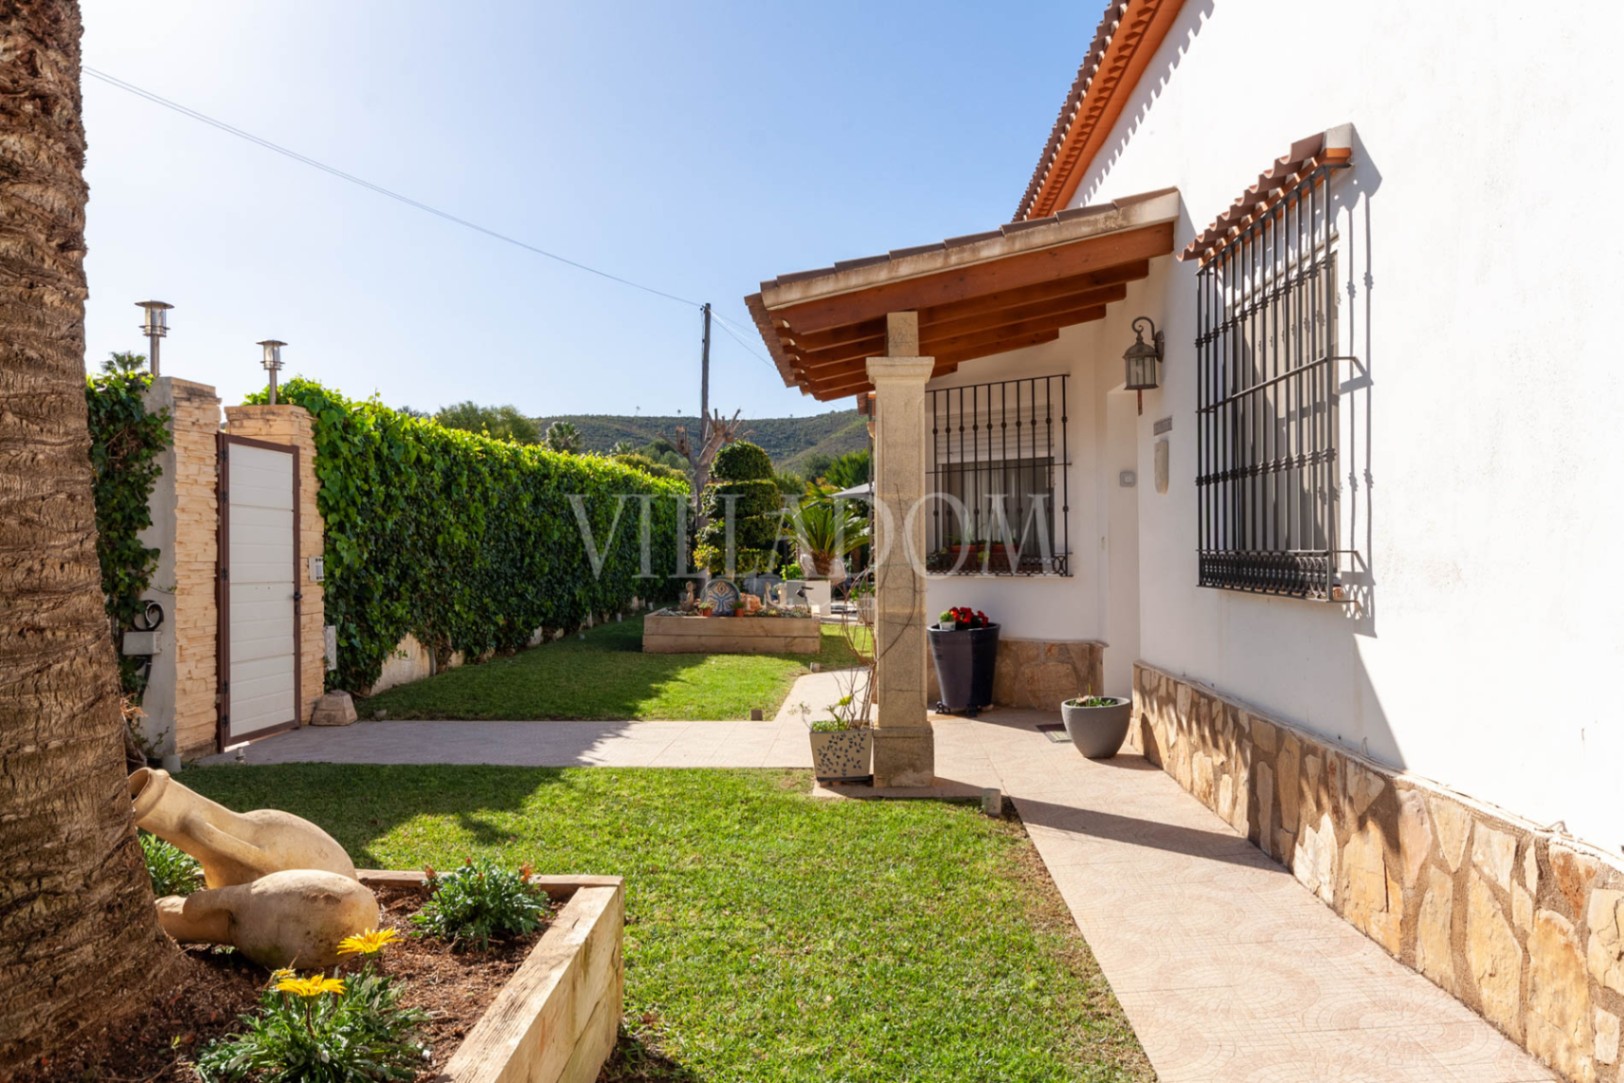 Villa avec 4 chambres à vendre à Pinosol Jávea